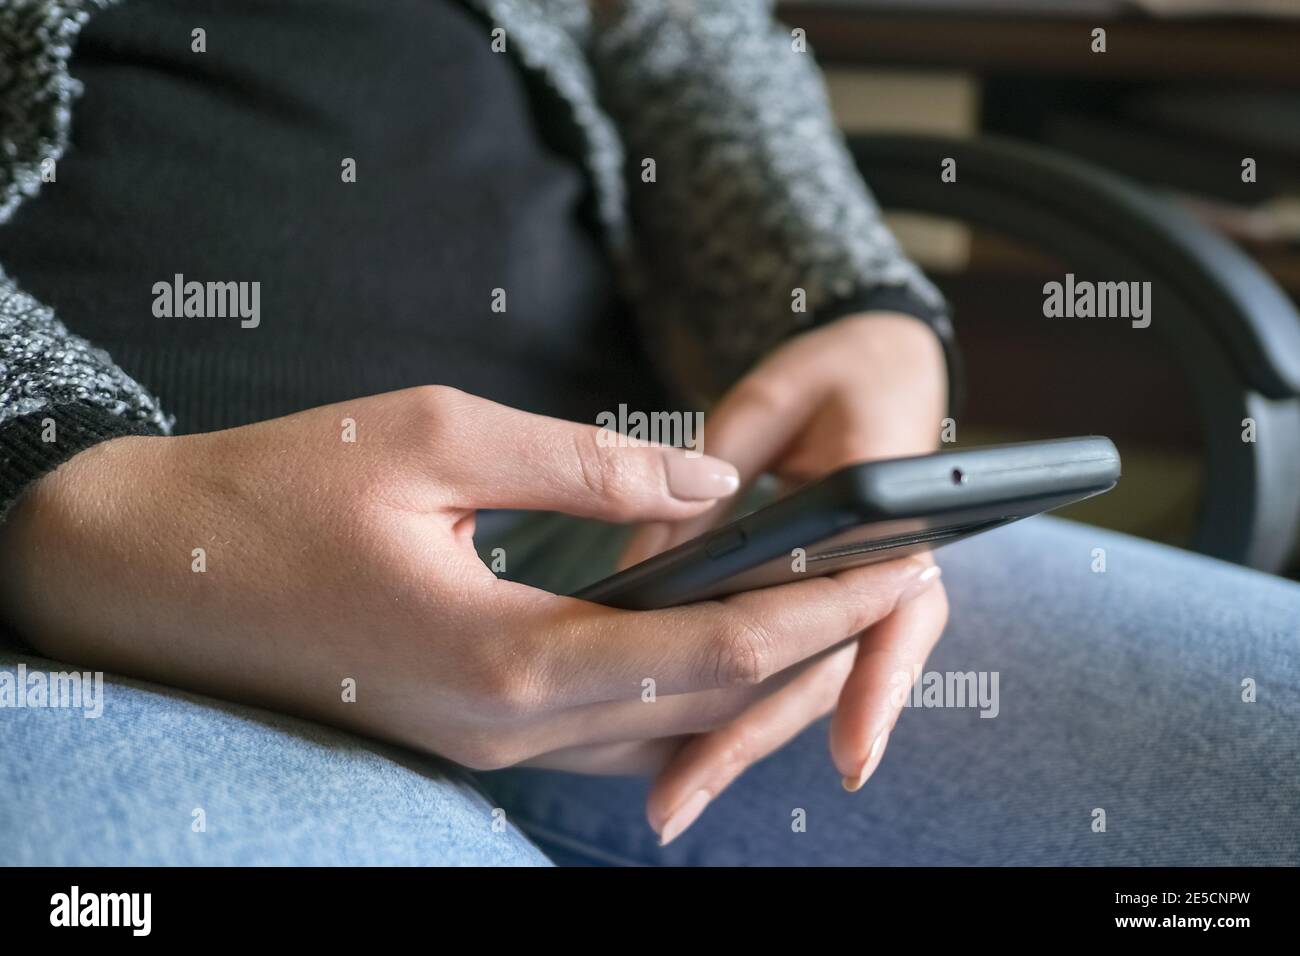 Frau mit Smartphone für Messaging-Chat auf einem Smartphone, soziale Netzwerk Technikabhängigkeit Stockfoto